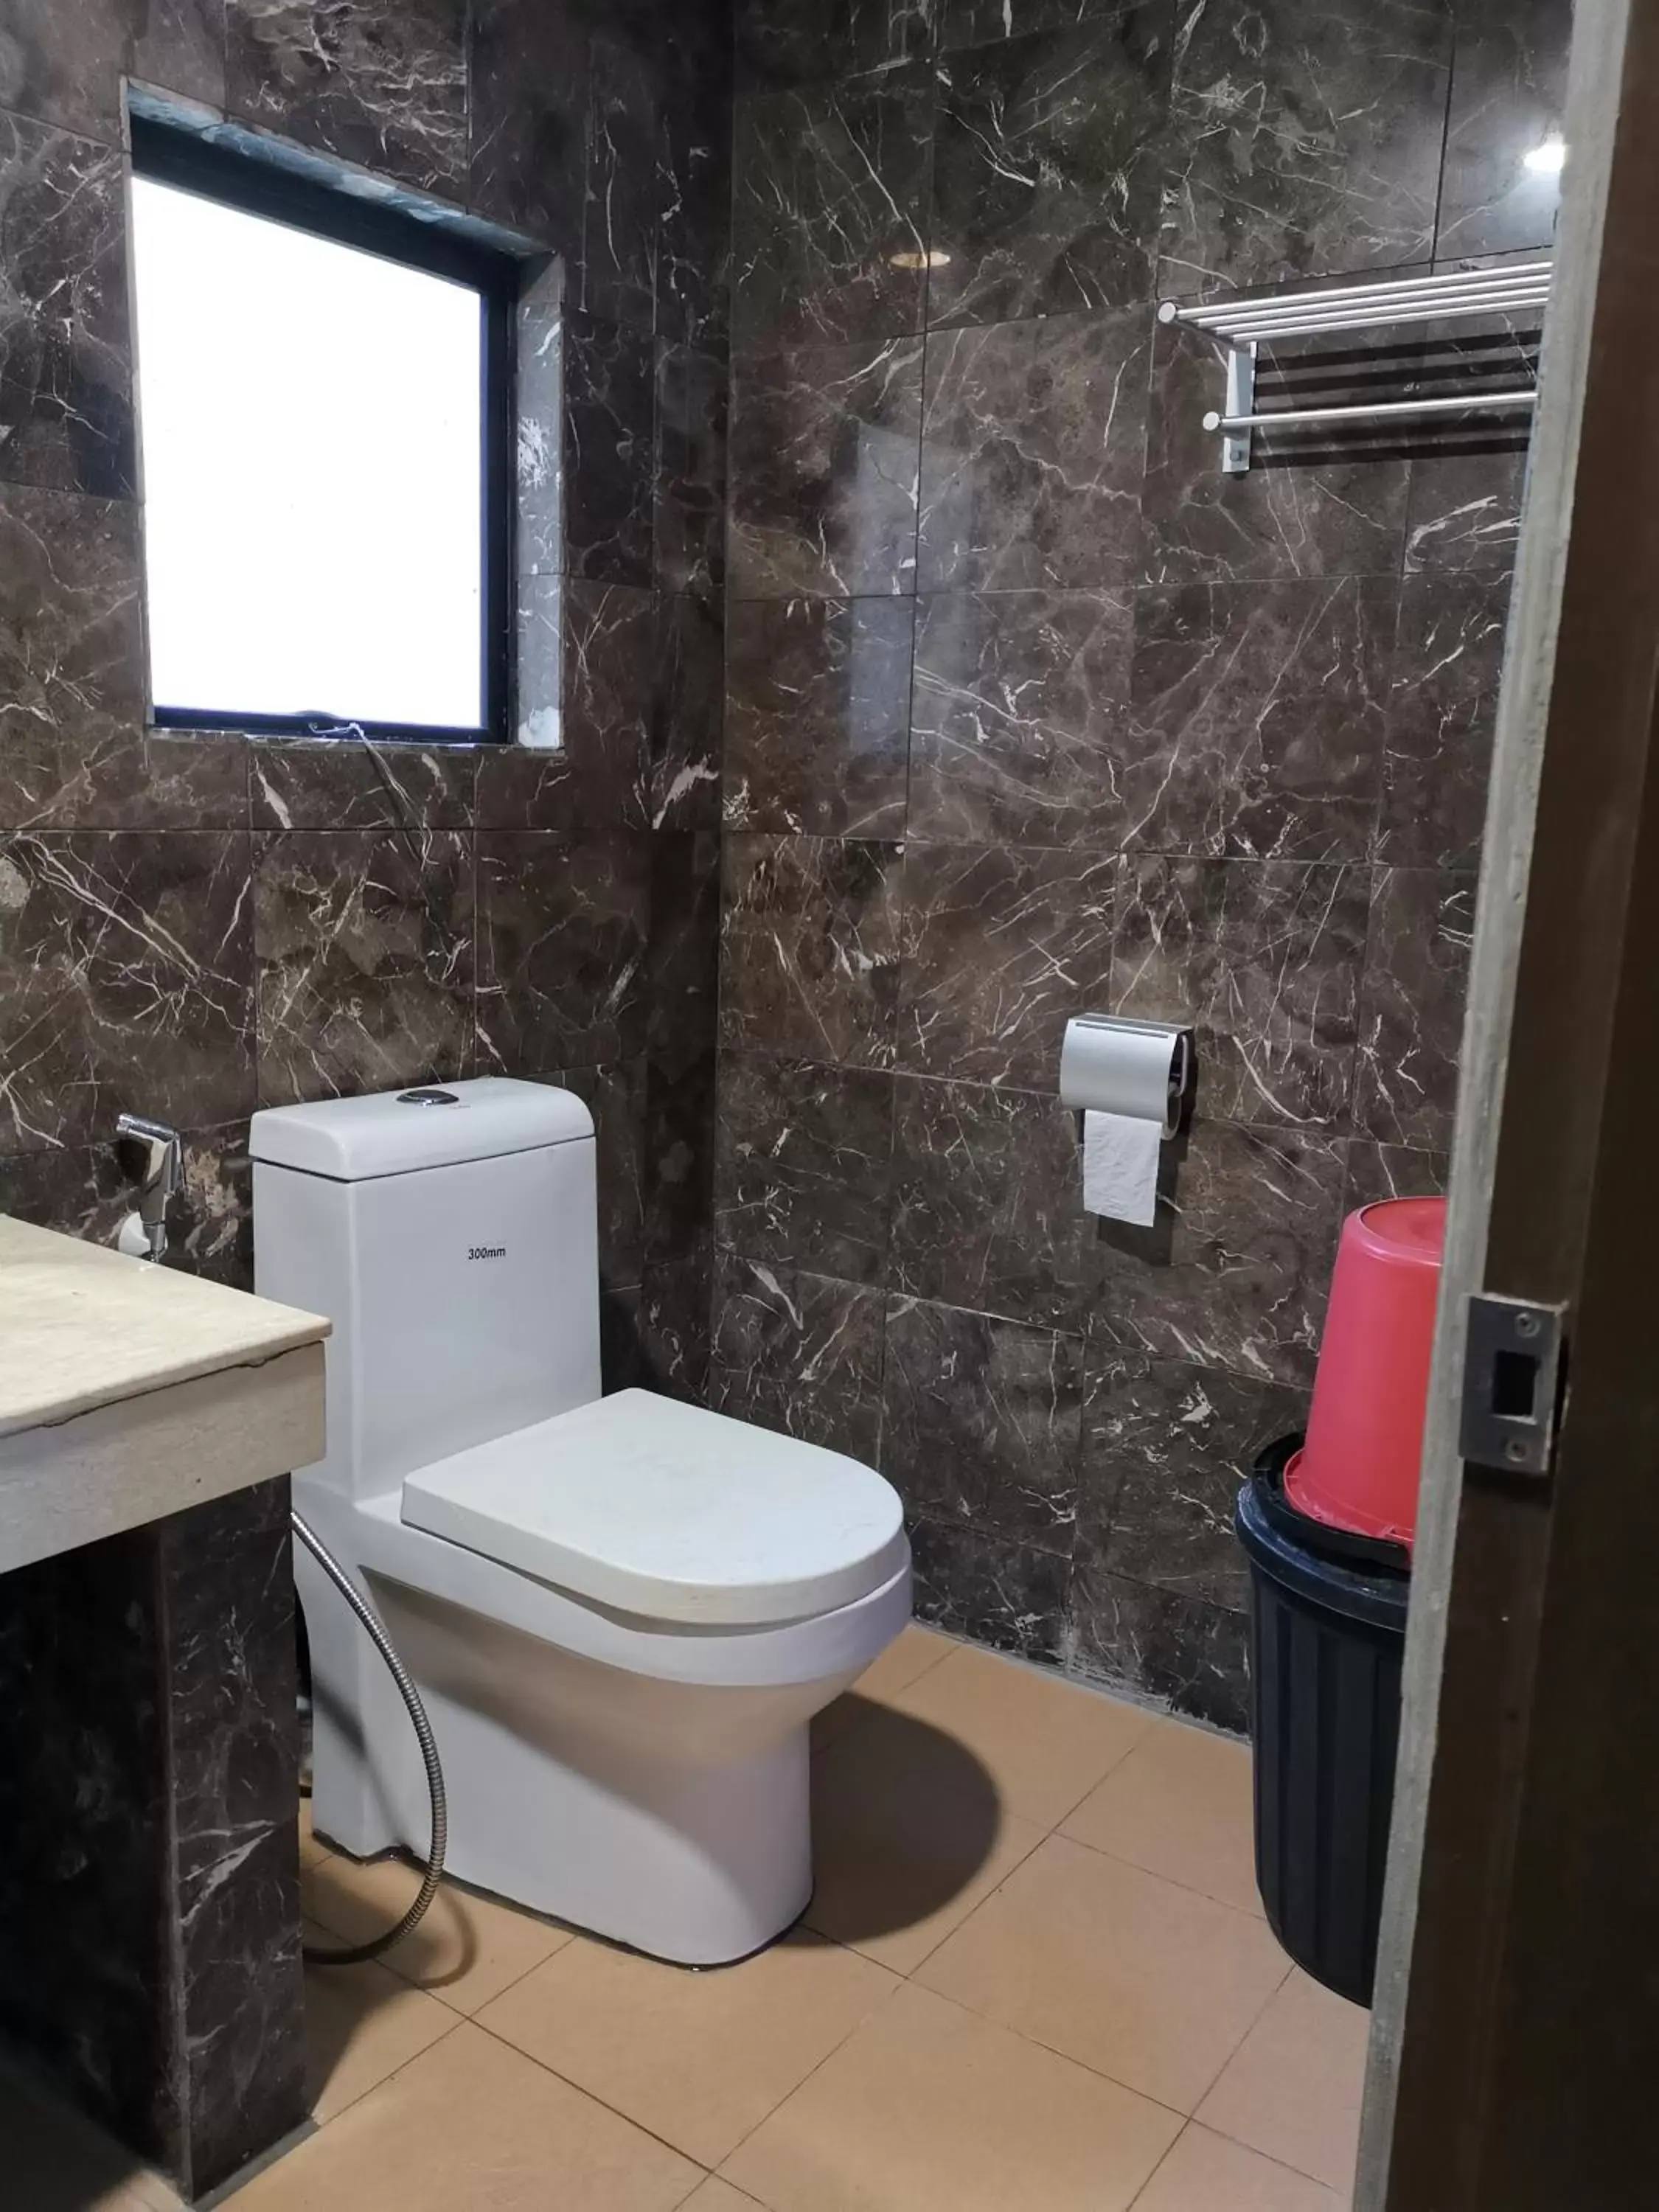 Toilet, Bathroom in Fratini's Hotel Labuan